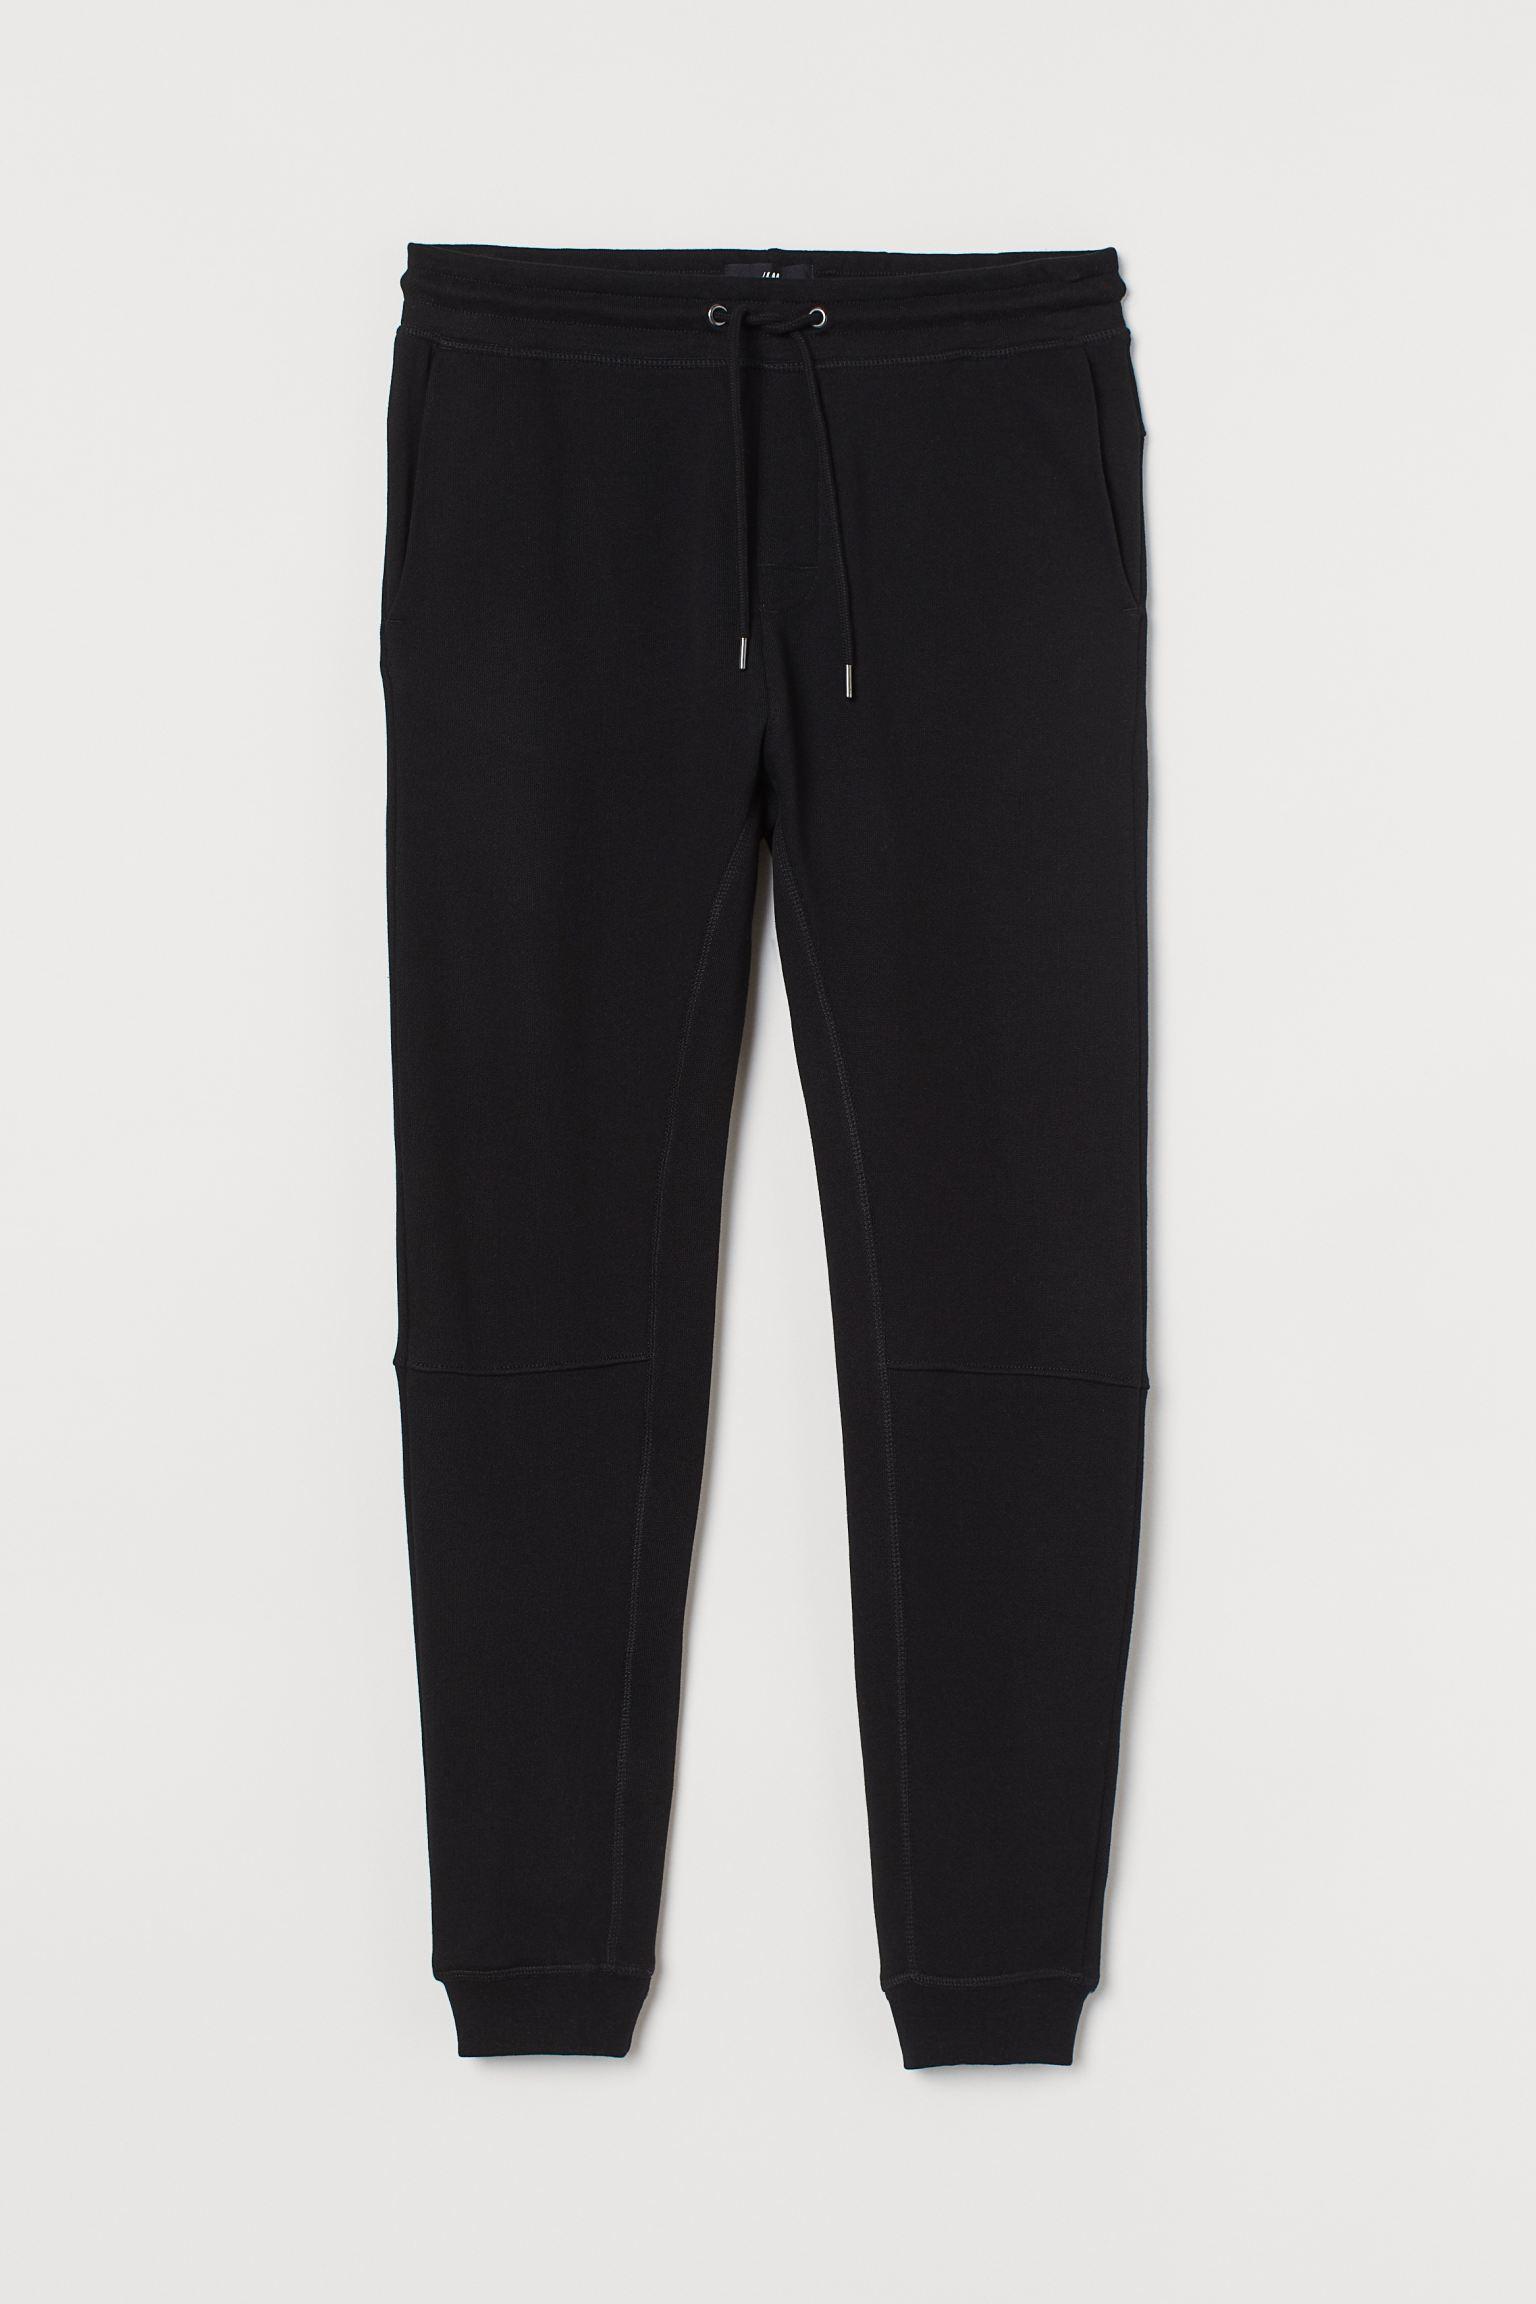 Отзыв на Спортивные штаны  Fit из Интернет-Магазина H&M